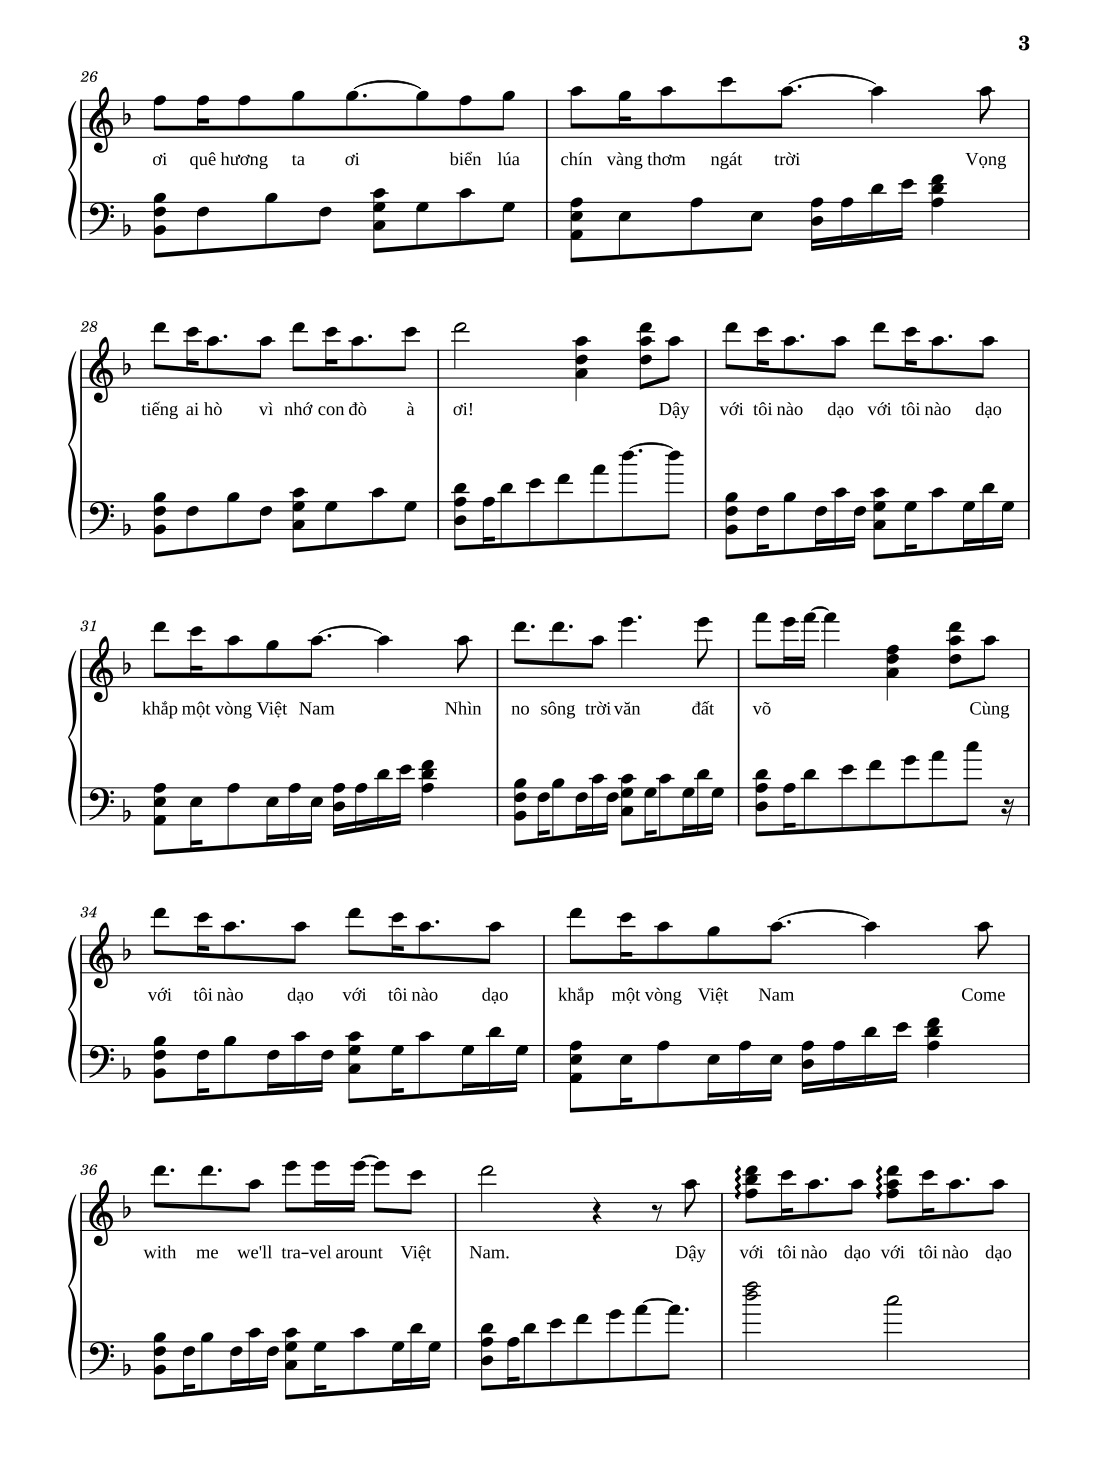 Sheet Piano Một Vòng Việt Nam - 3